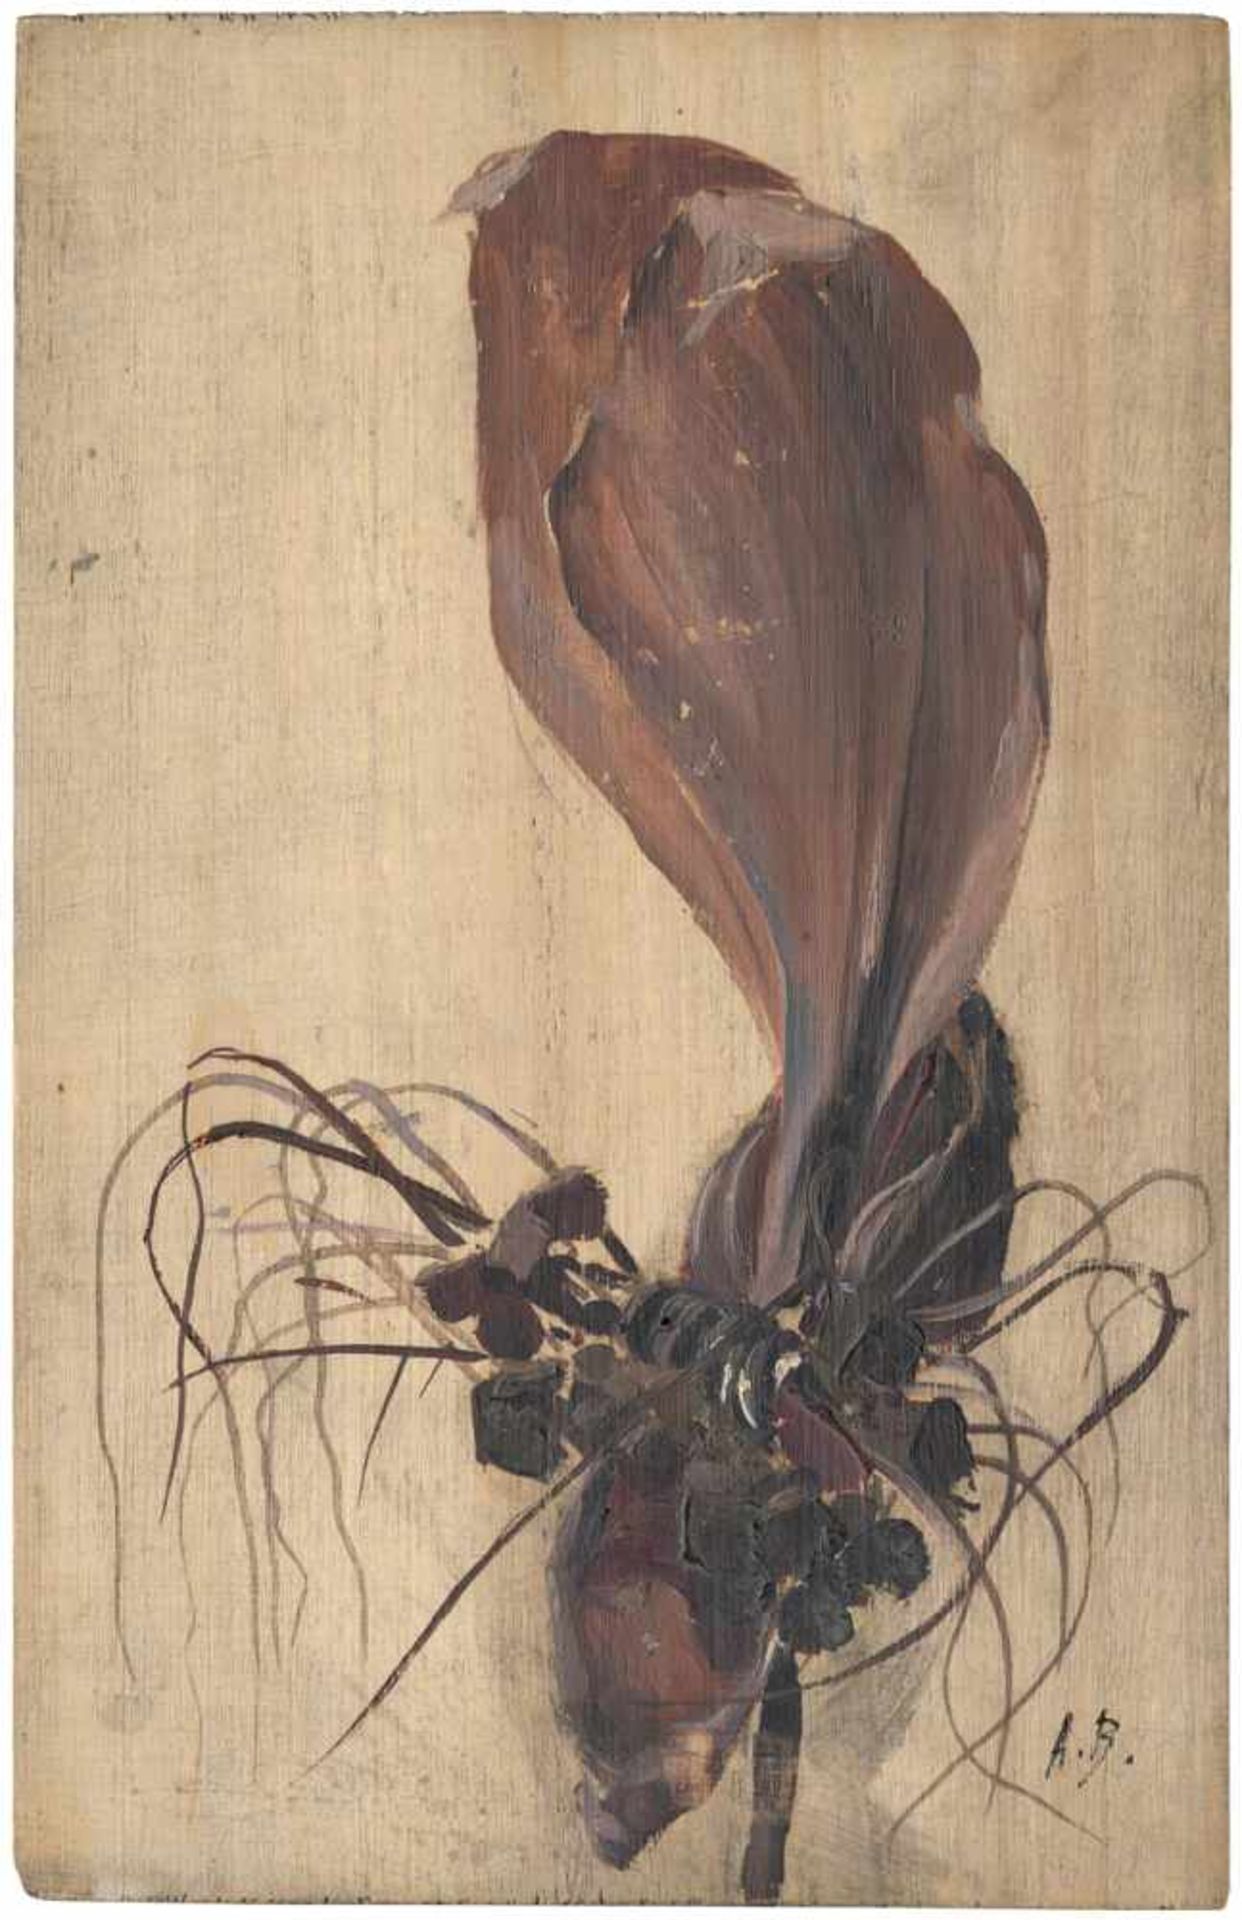 Bailly, Alexandre: Studie einer Orchidee Studie einer Orchidee. Öl auf Holz. 26,3 x 16,9 cm.